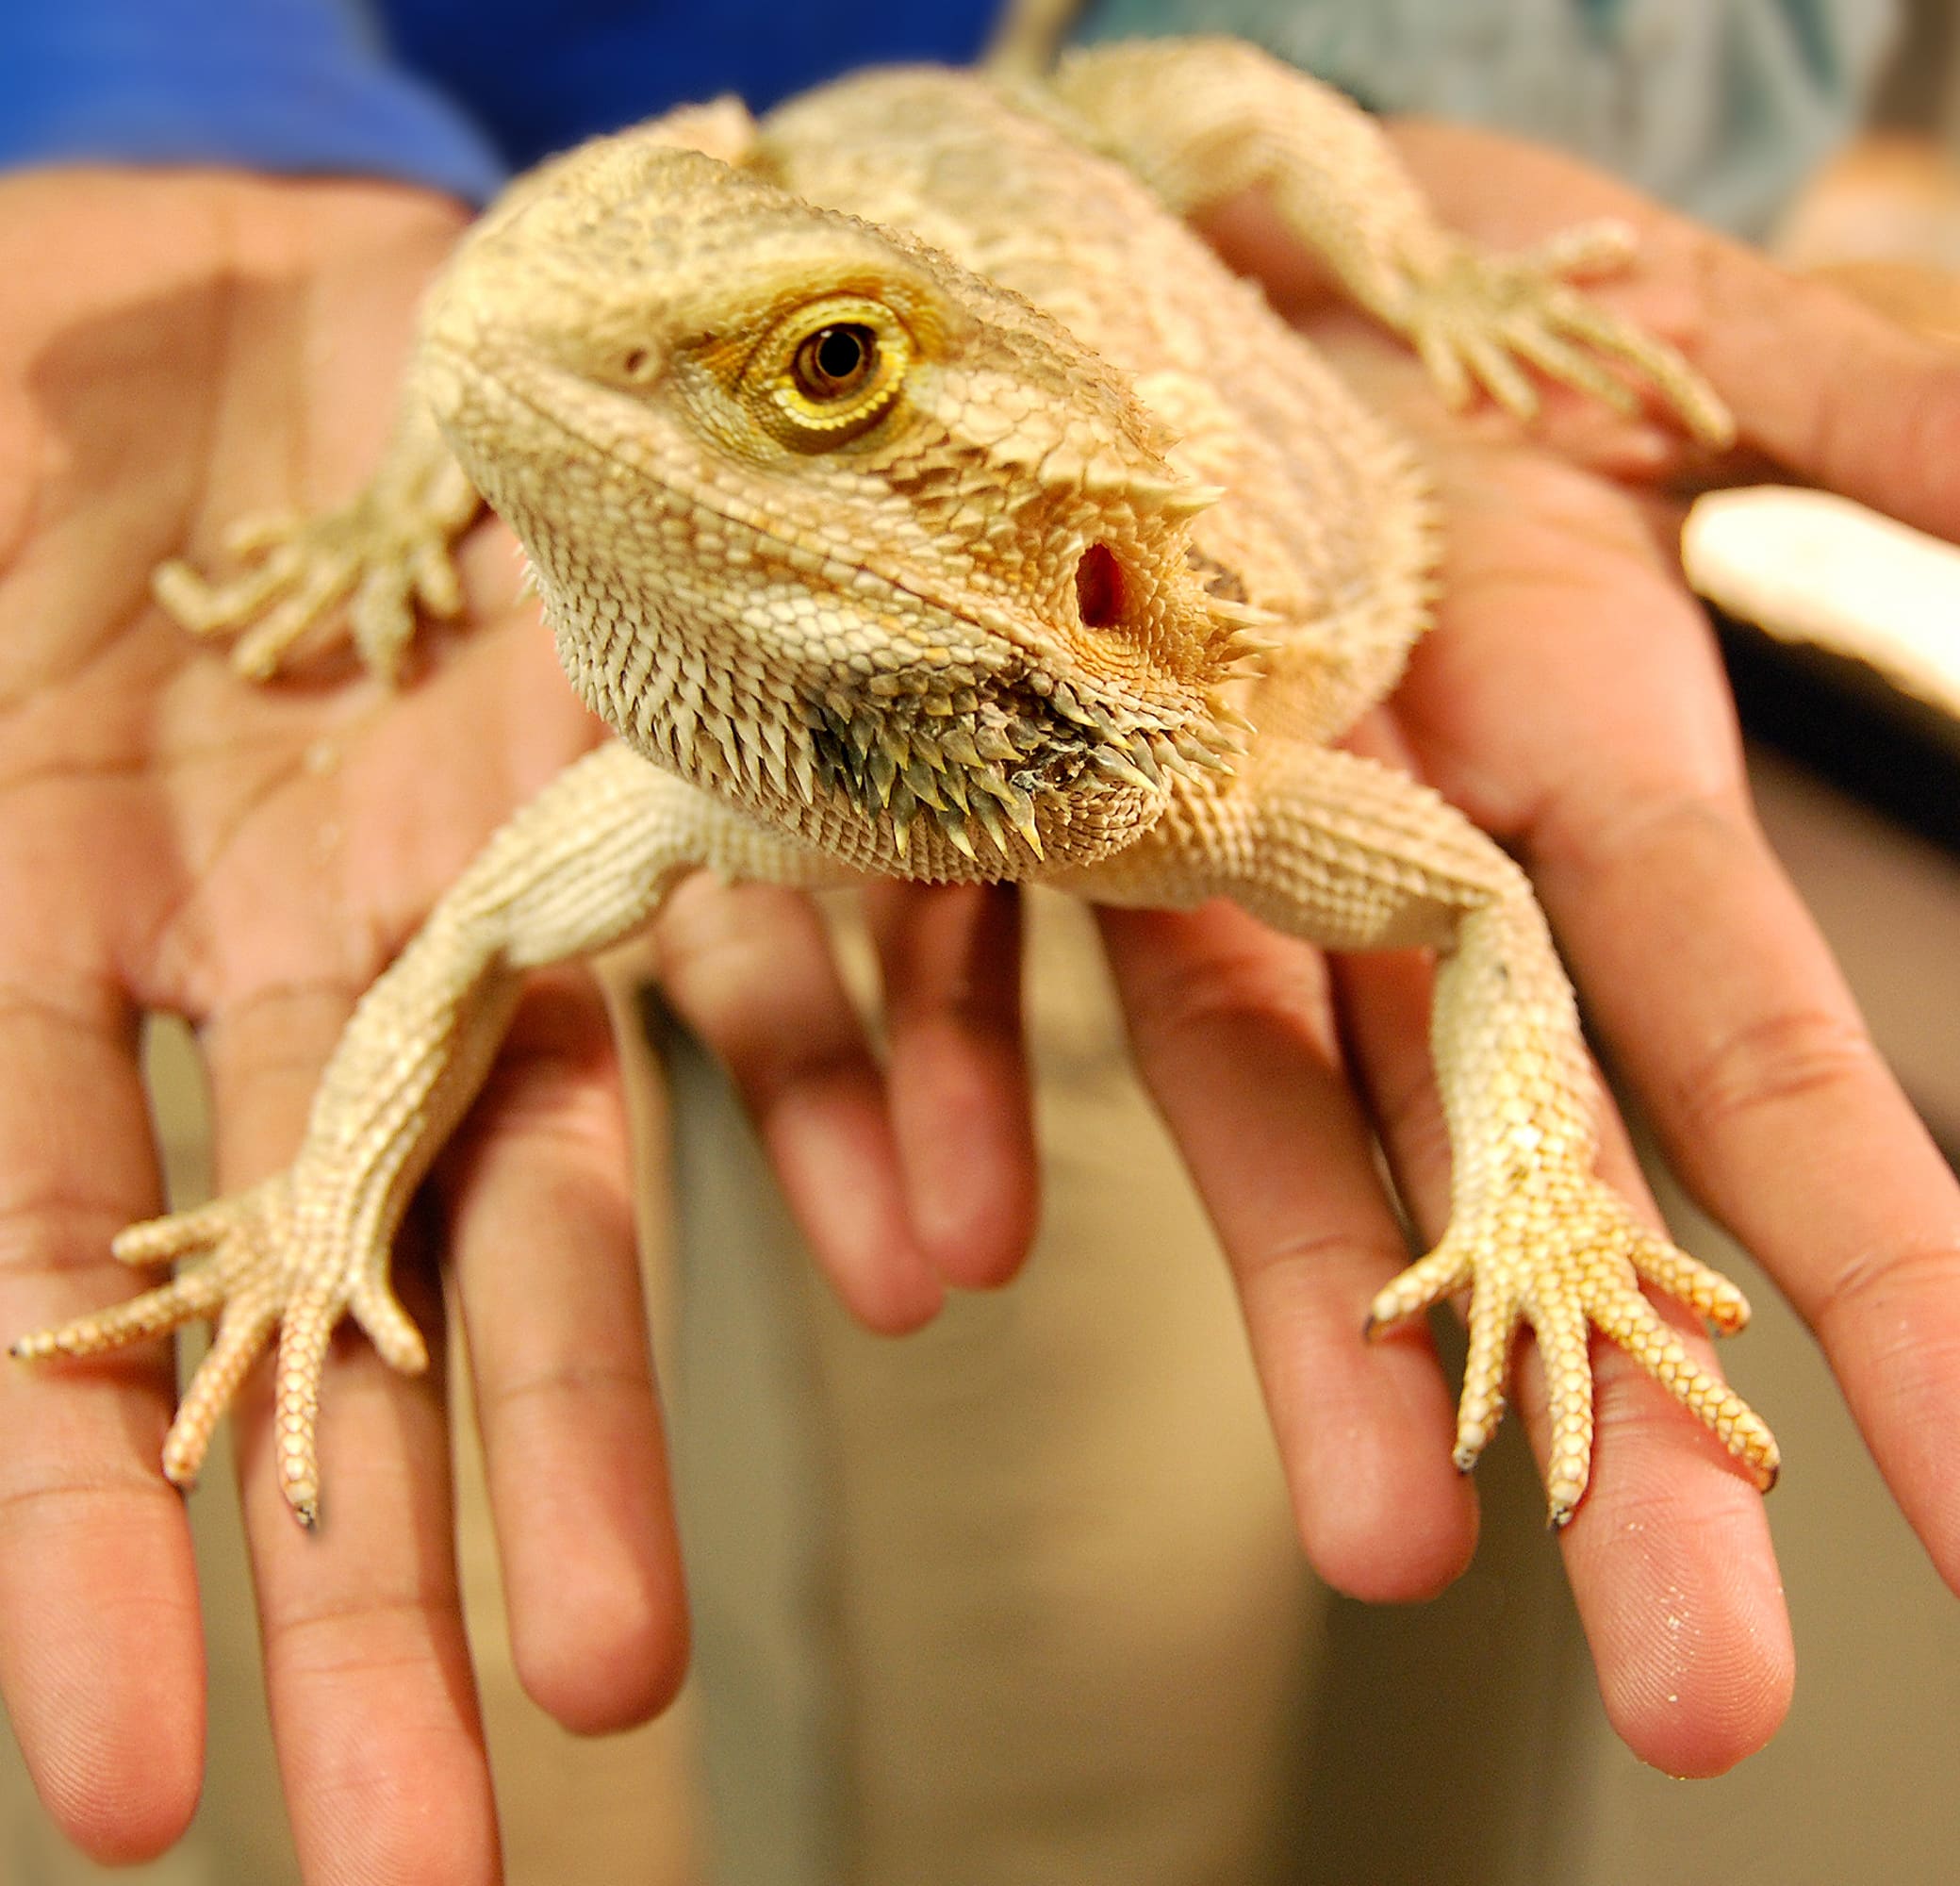 a hand holding a lizard